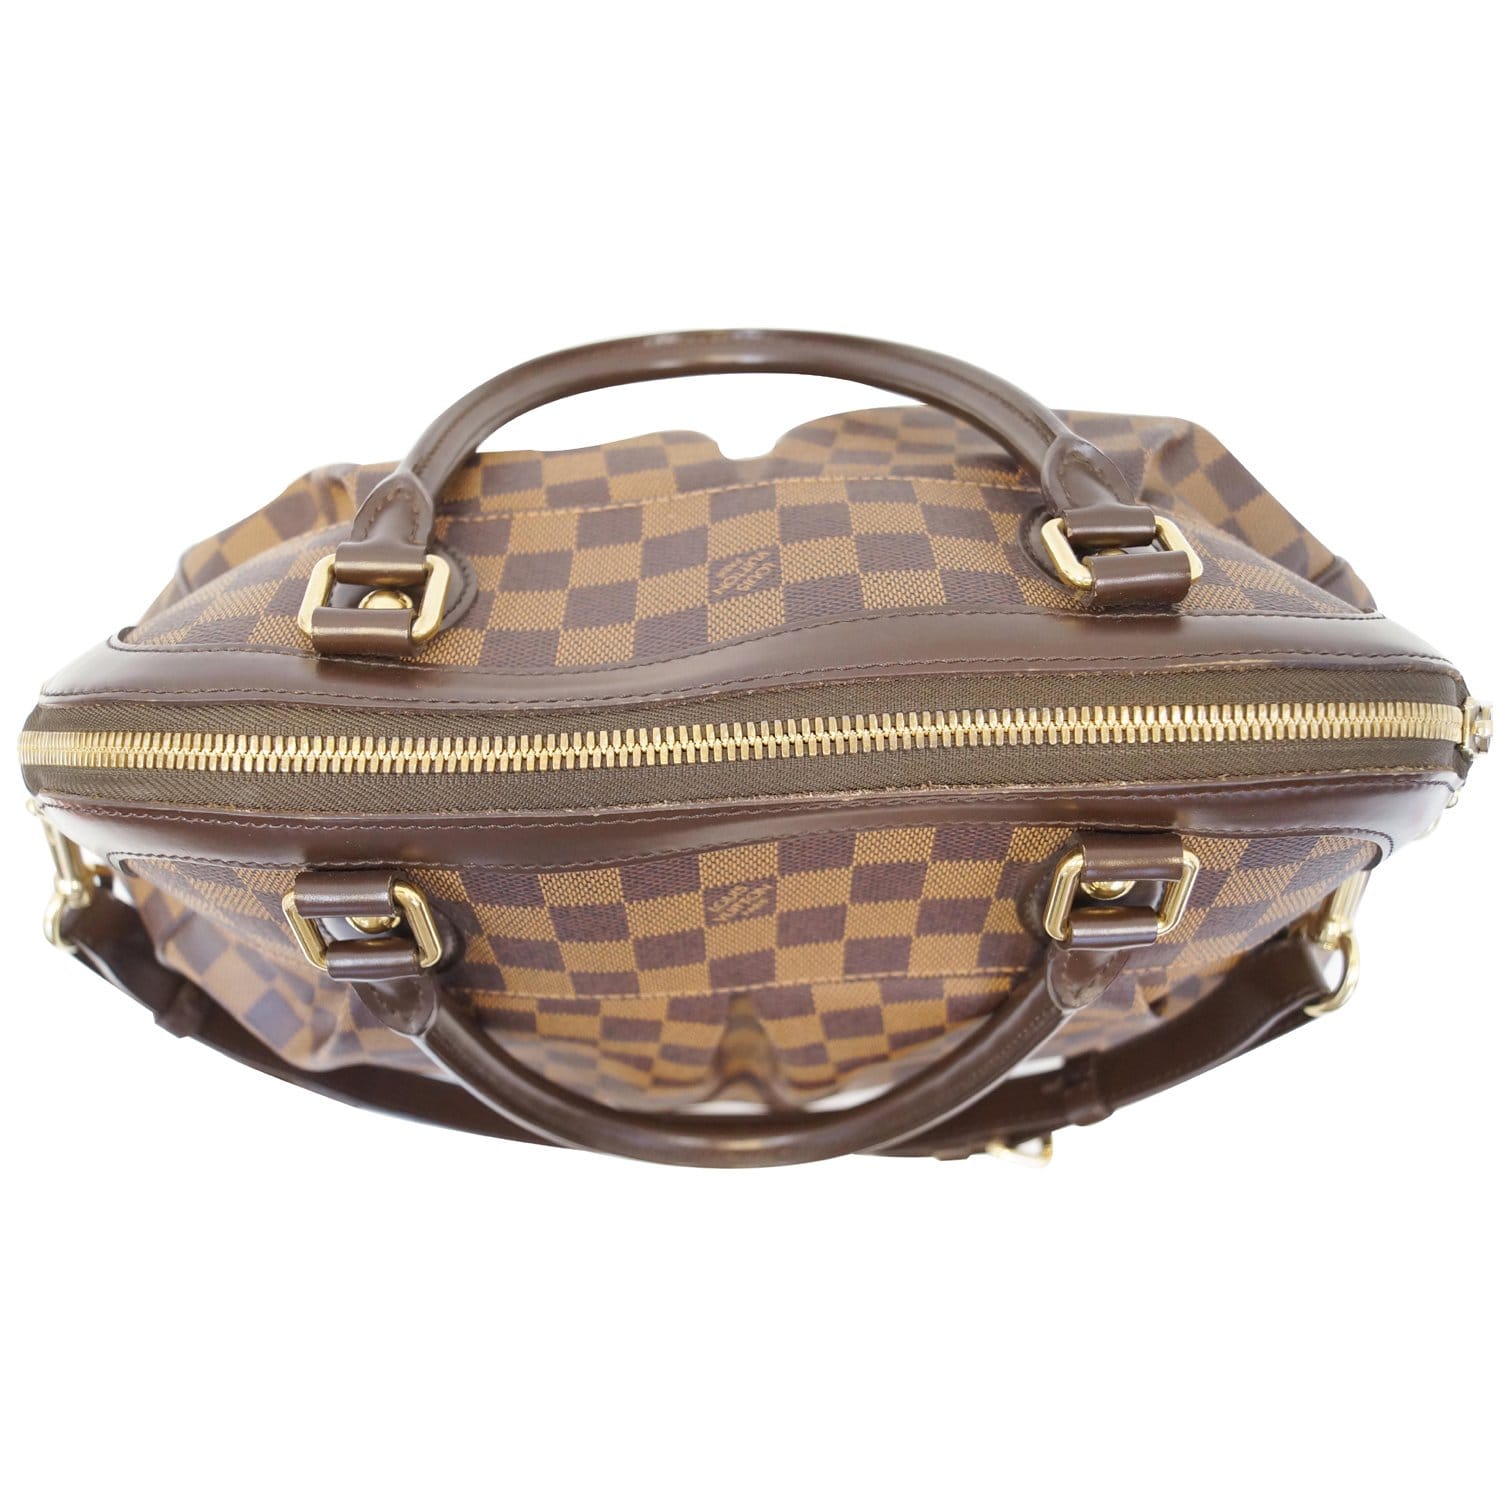 Louis Vuitton Trevi GM Damier Ebene Canvas Top Handle Bag on SALE